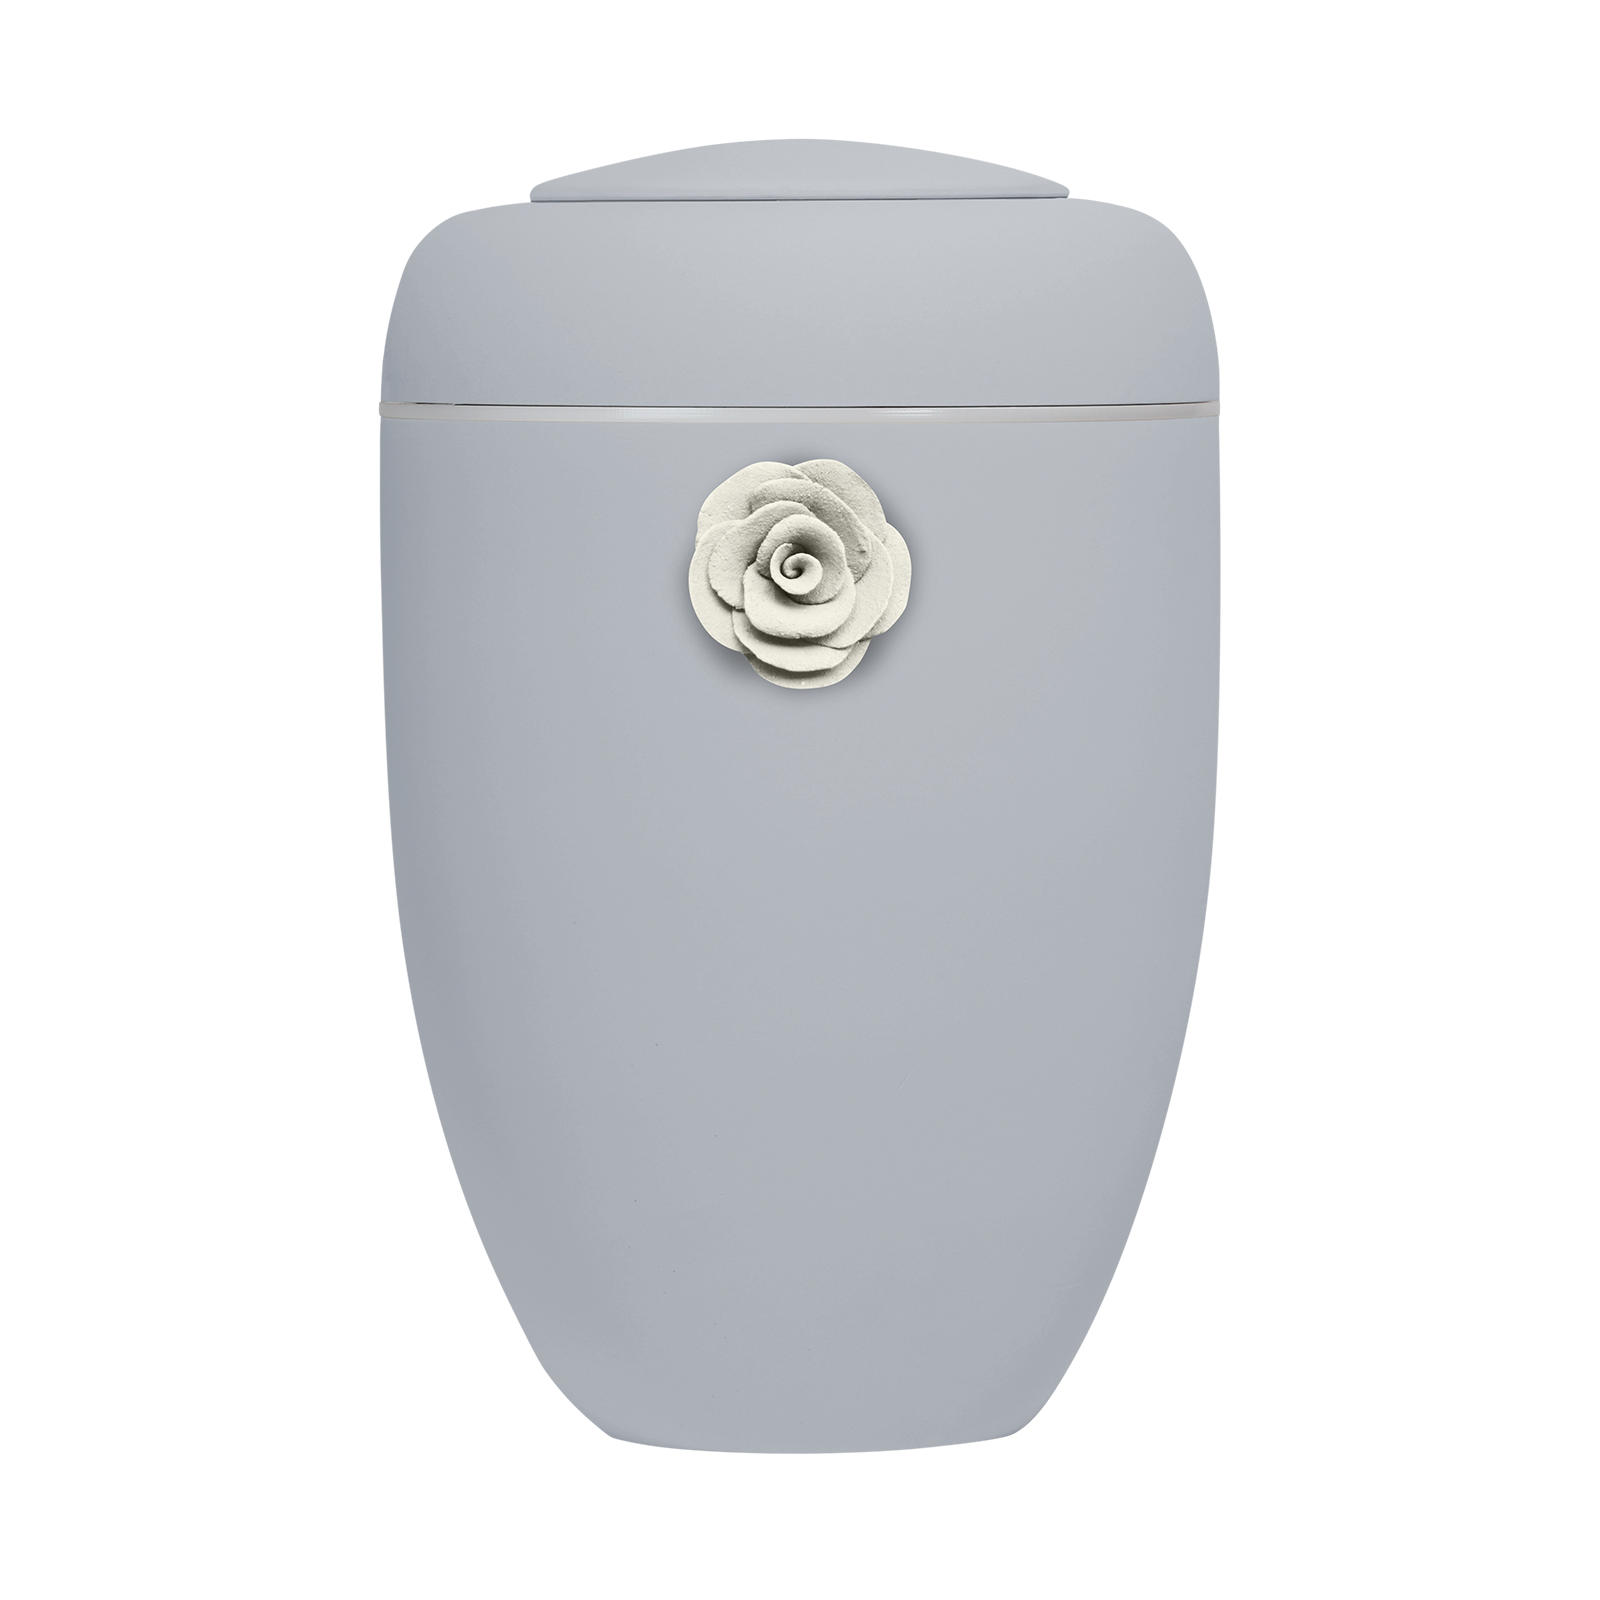 Hellgraue Symbol-Urne mit weißer Tonrose und weißer Plexiglasscheibe